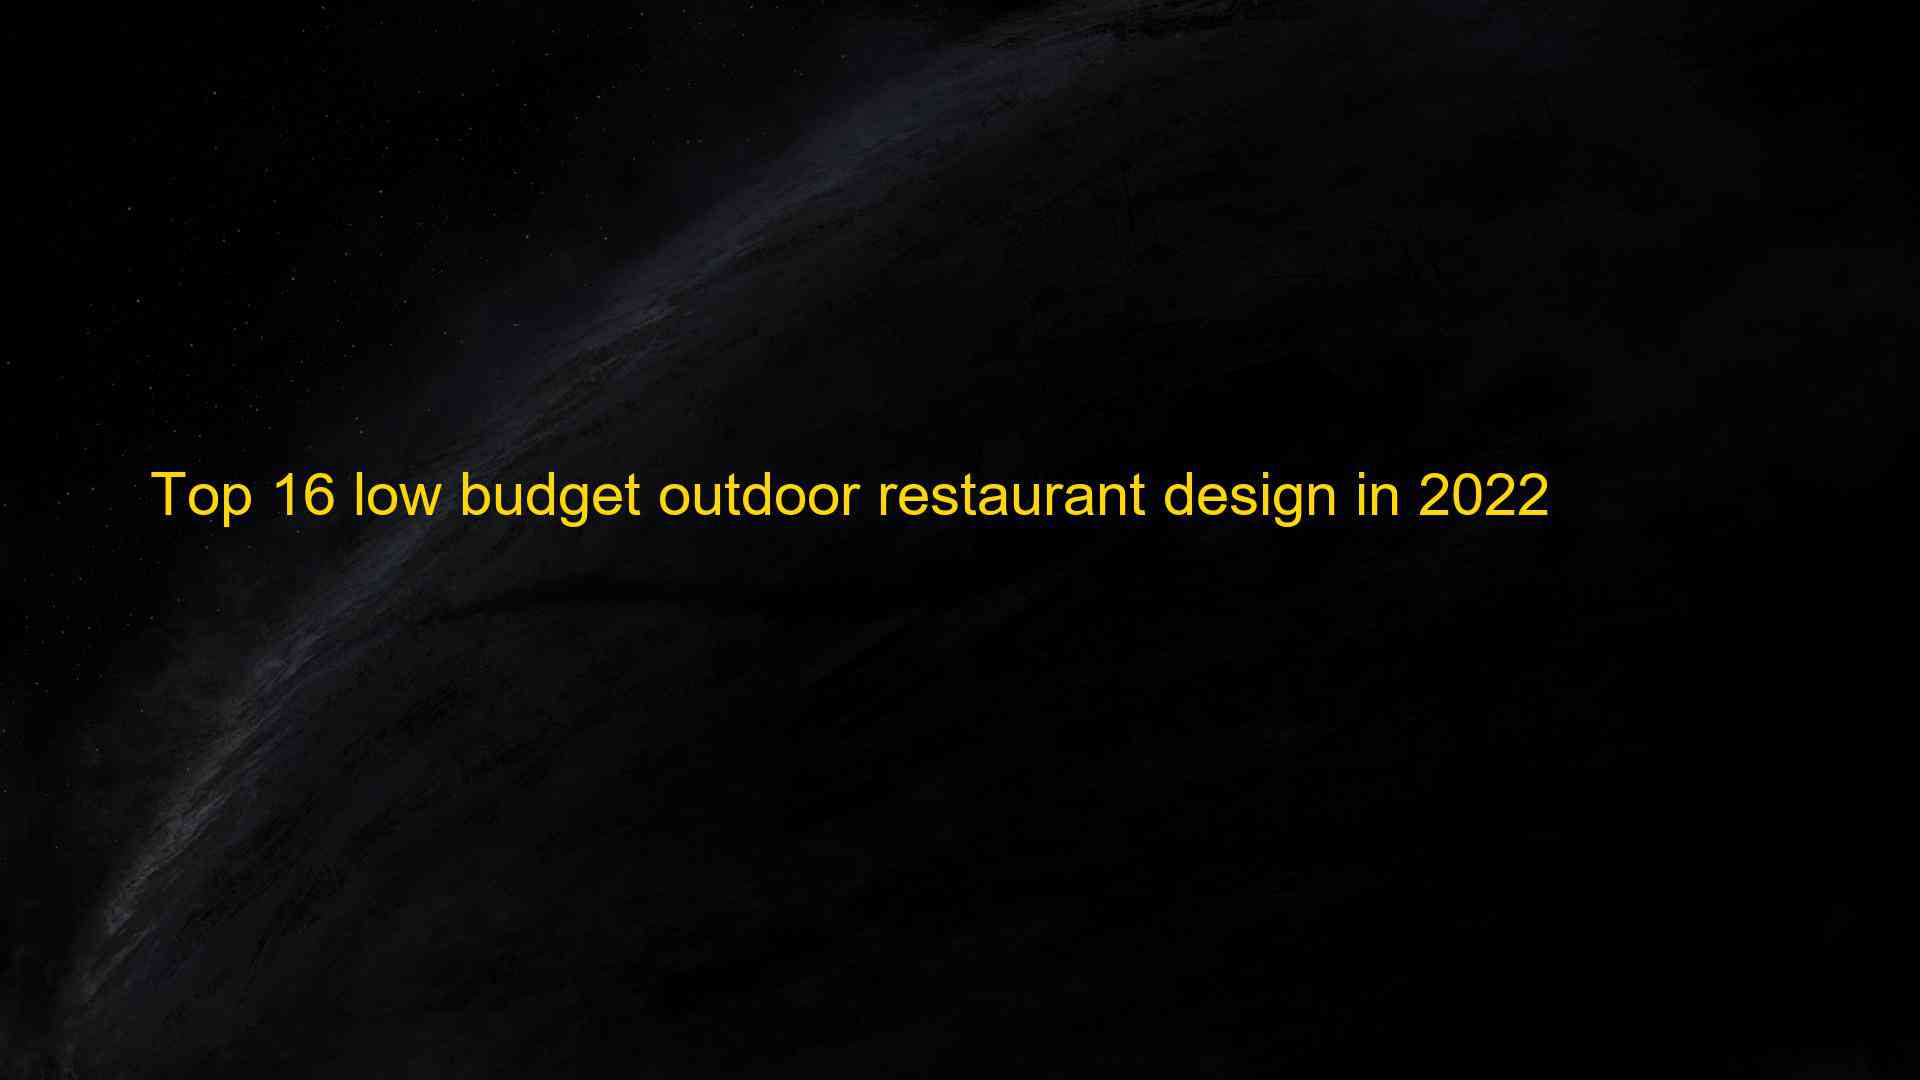 Top 16 low budget outdoor restaurant design in 2022 1662822435